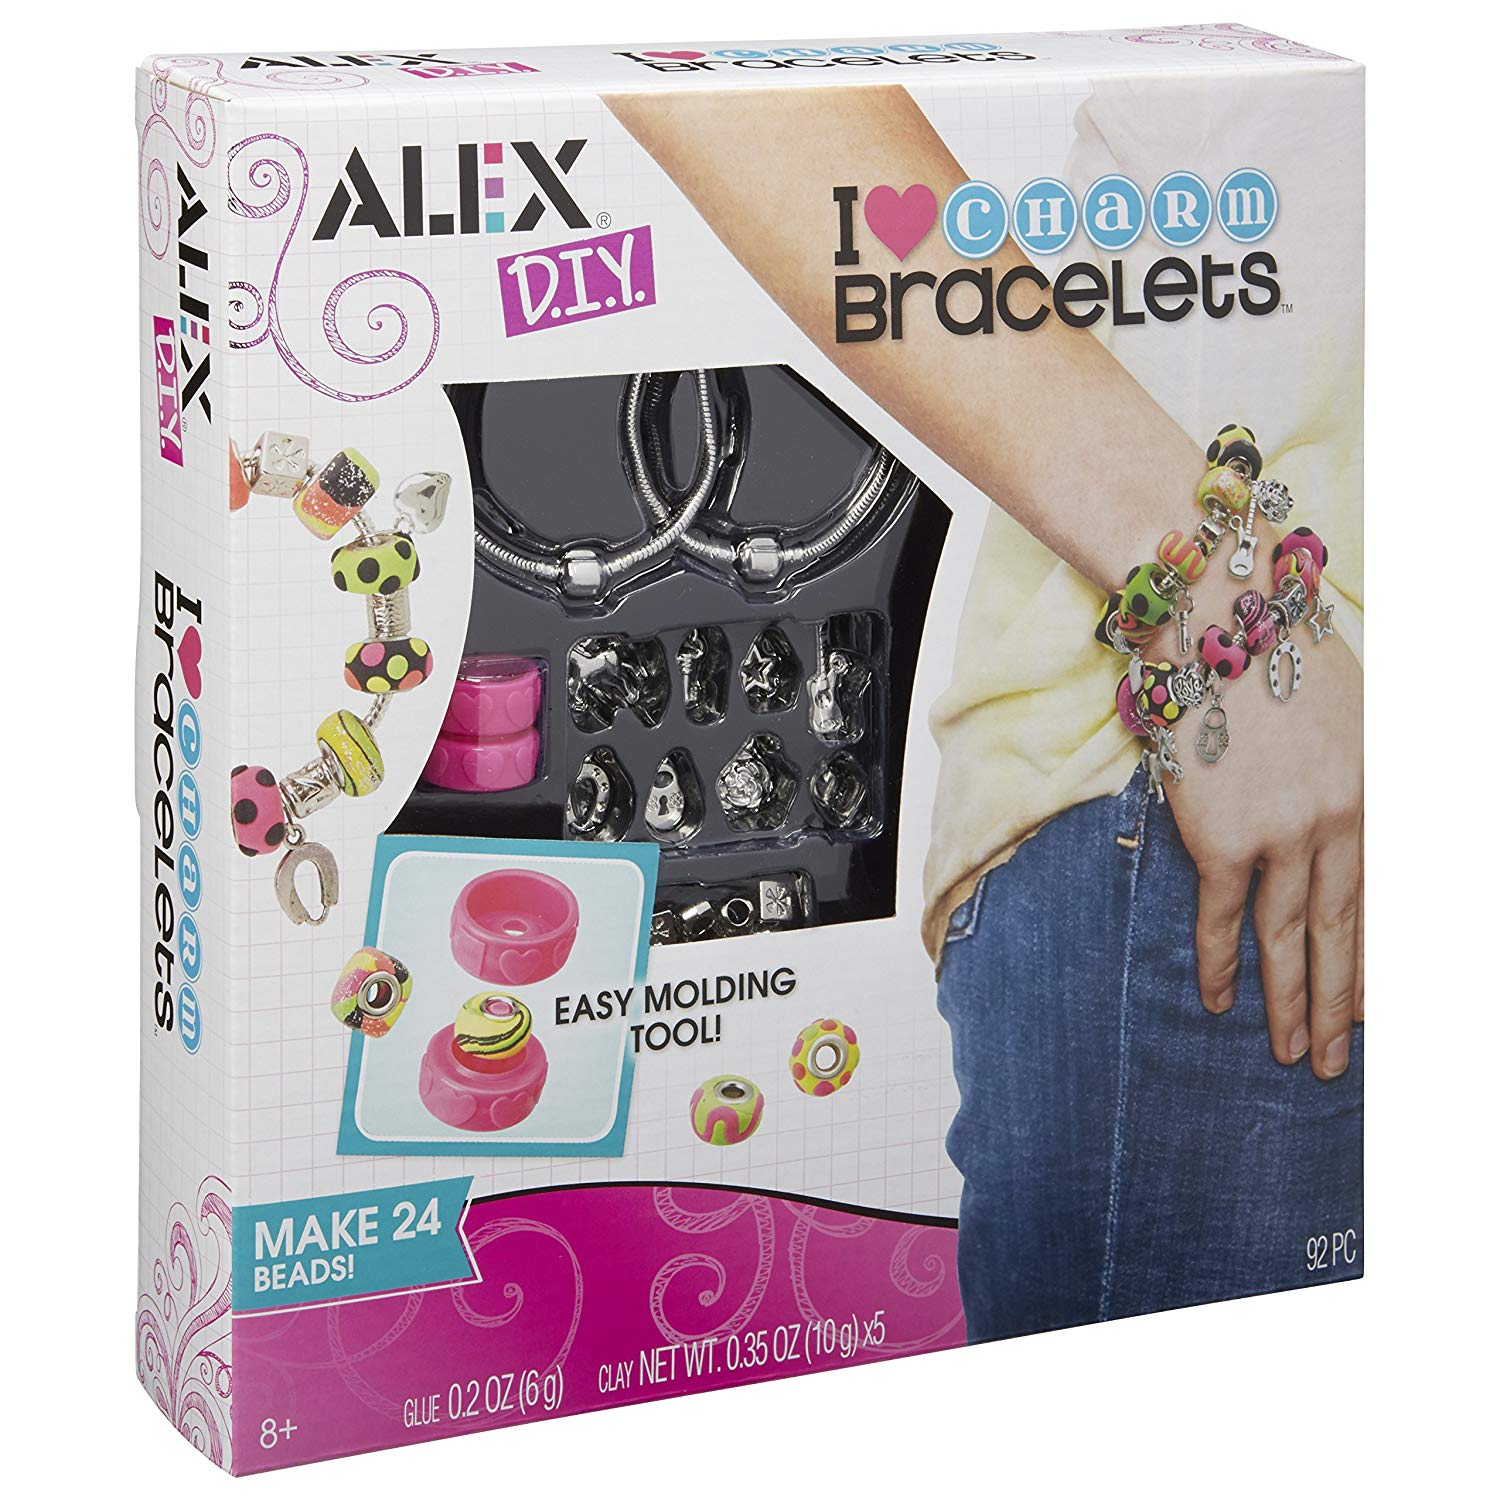 ALEX Toys DIY Wear I Heart Charm Bracelets Kit Only $7.99!